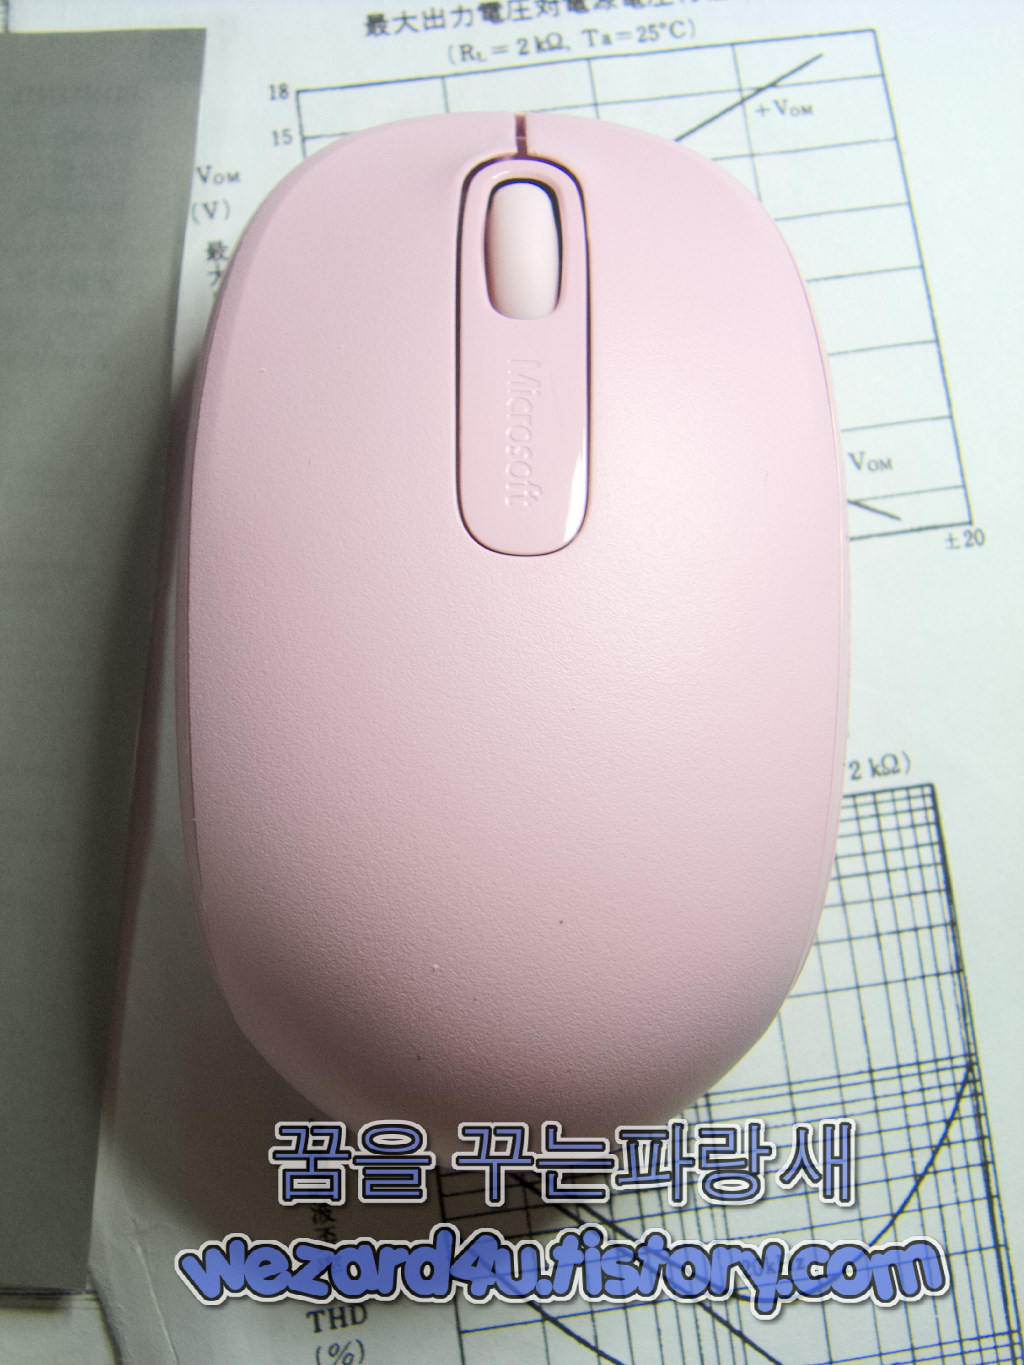 마이크로소프트 무선 마우스 Wireless Mobile Mouse 1850 마우스 리뷰